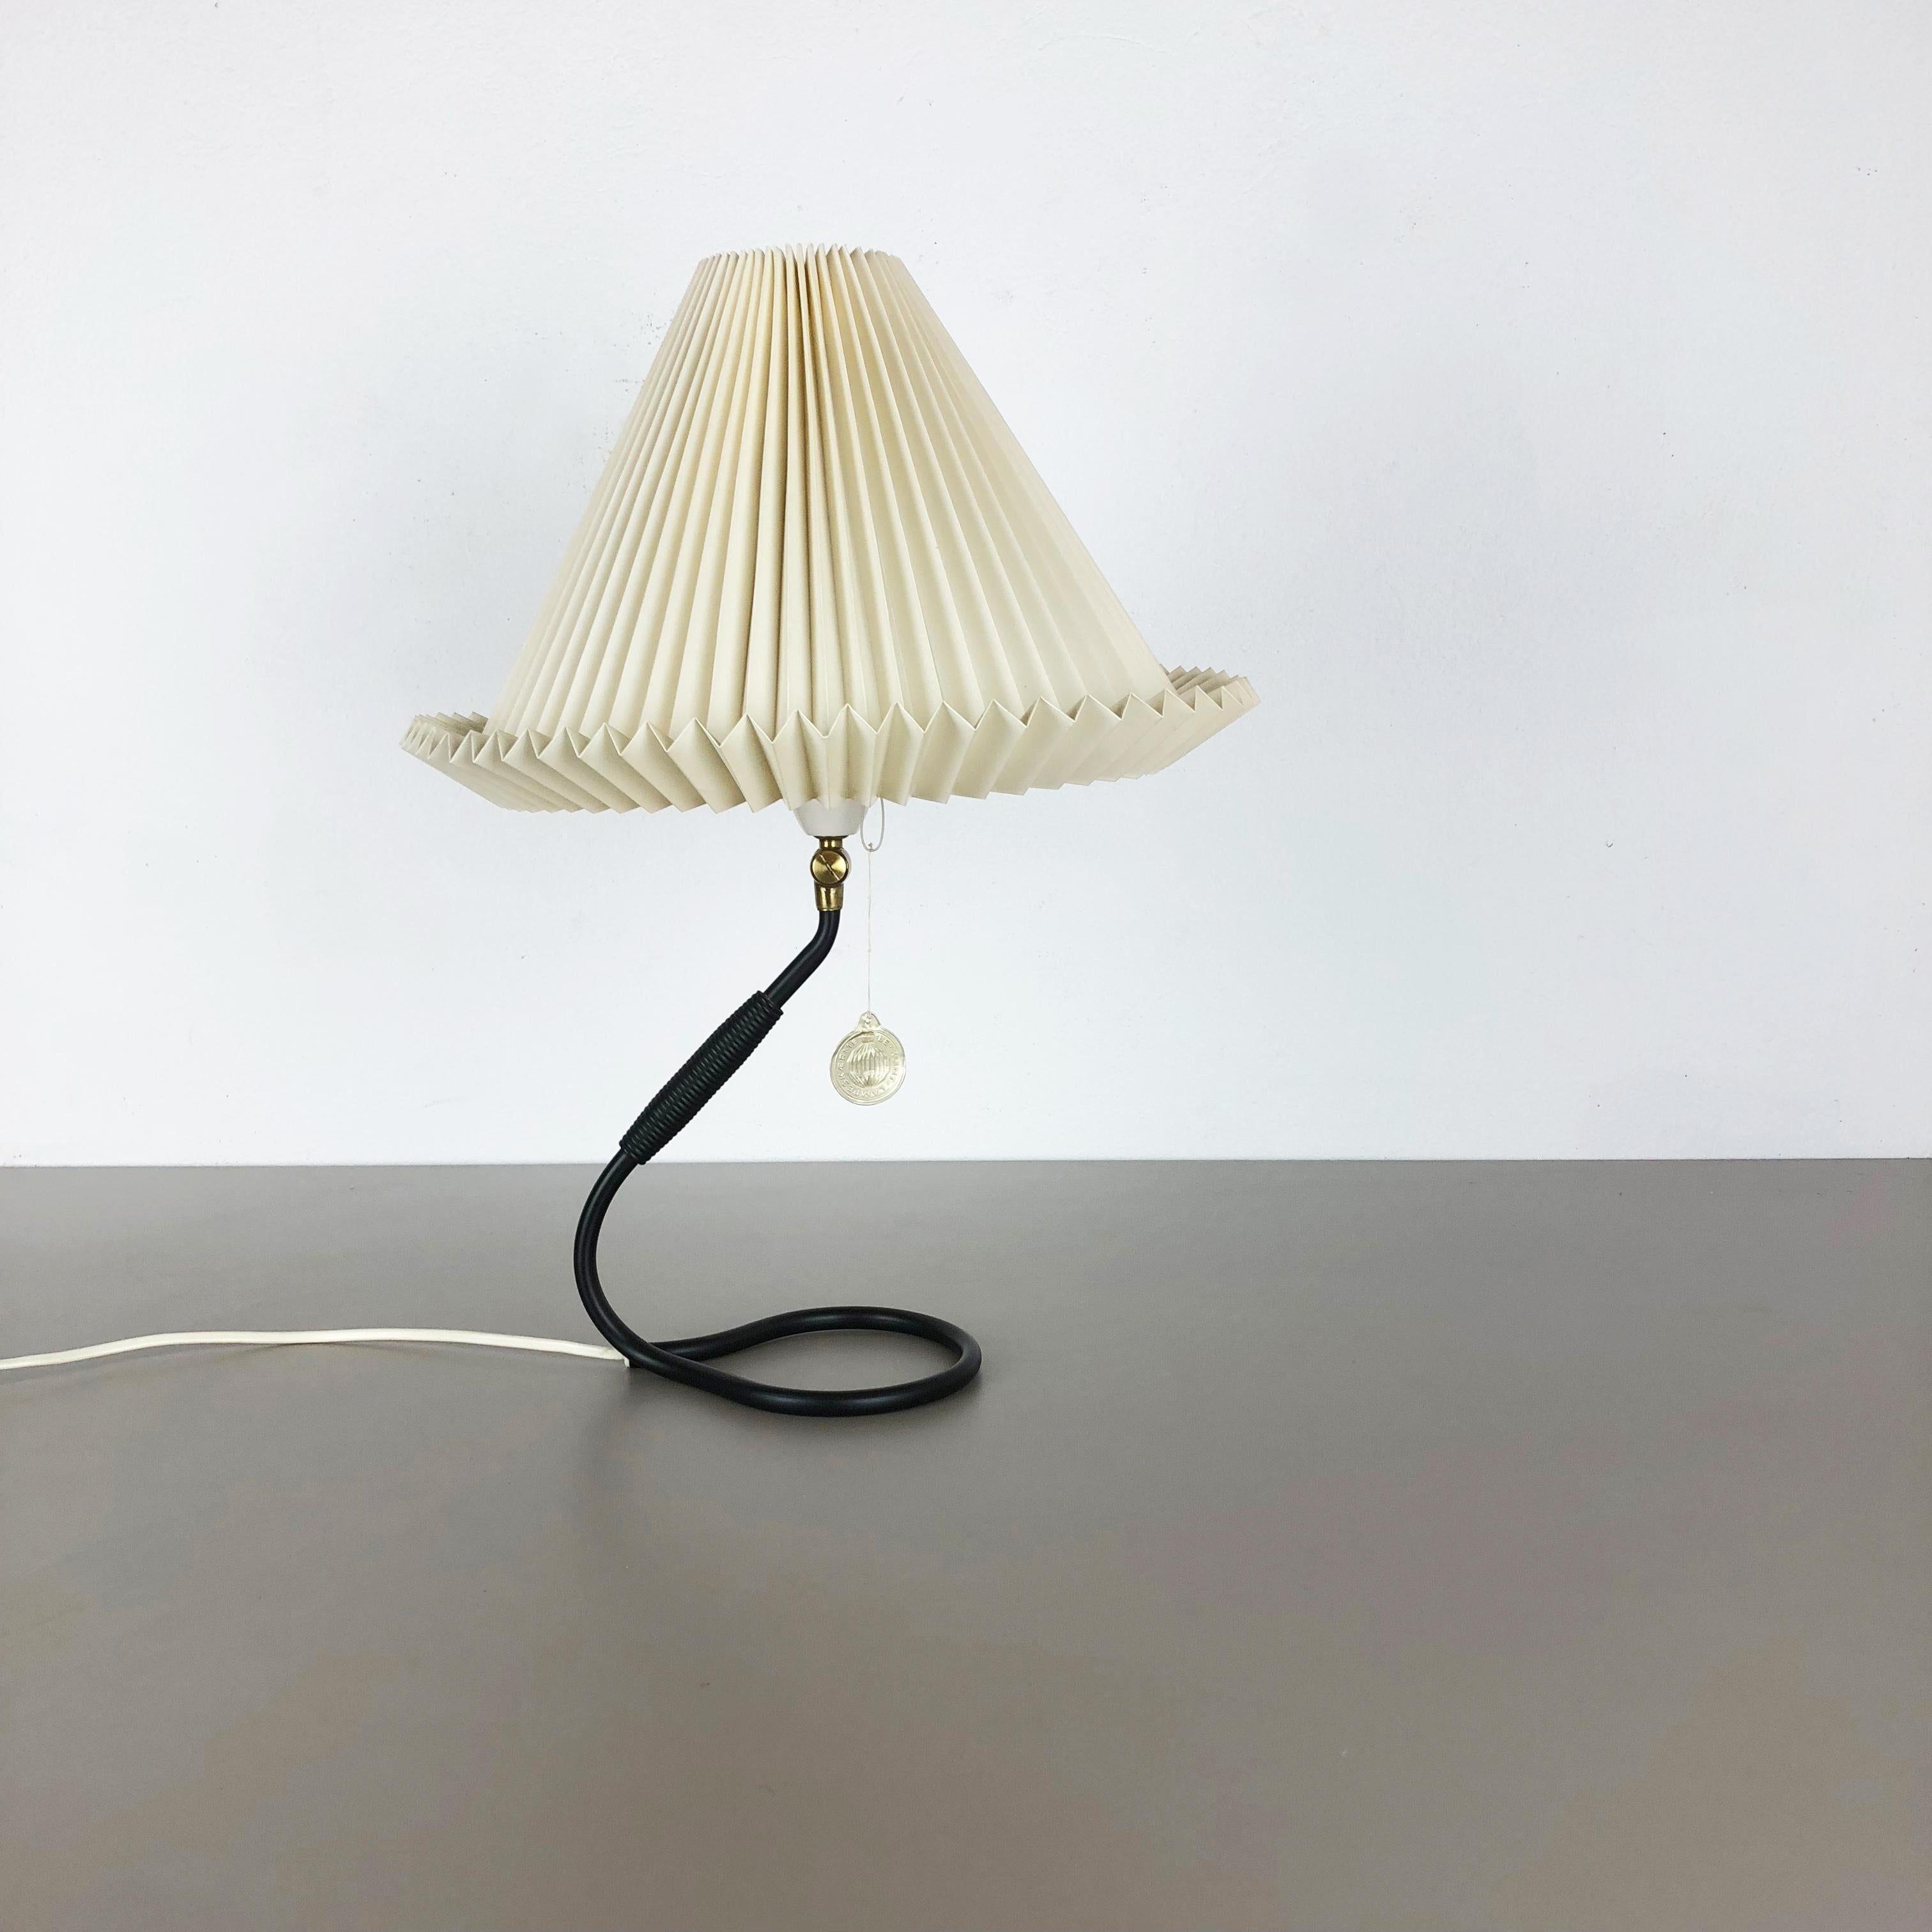 Article:

Table light


Producer:

Le Klint


Designer:

Kaare Klint


Age:

1960s




Description:

This super rare desk light was designed by Kaare Klint in the 1950s and produced by the company Le Klint in Denmark in the